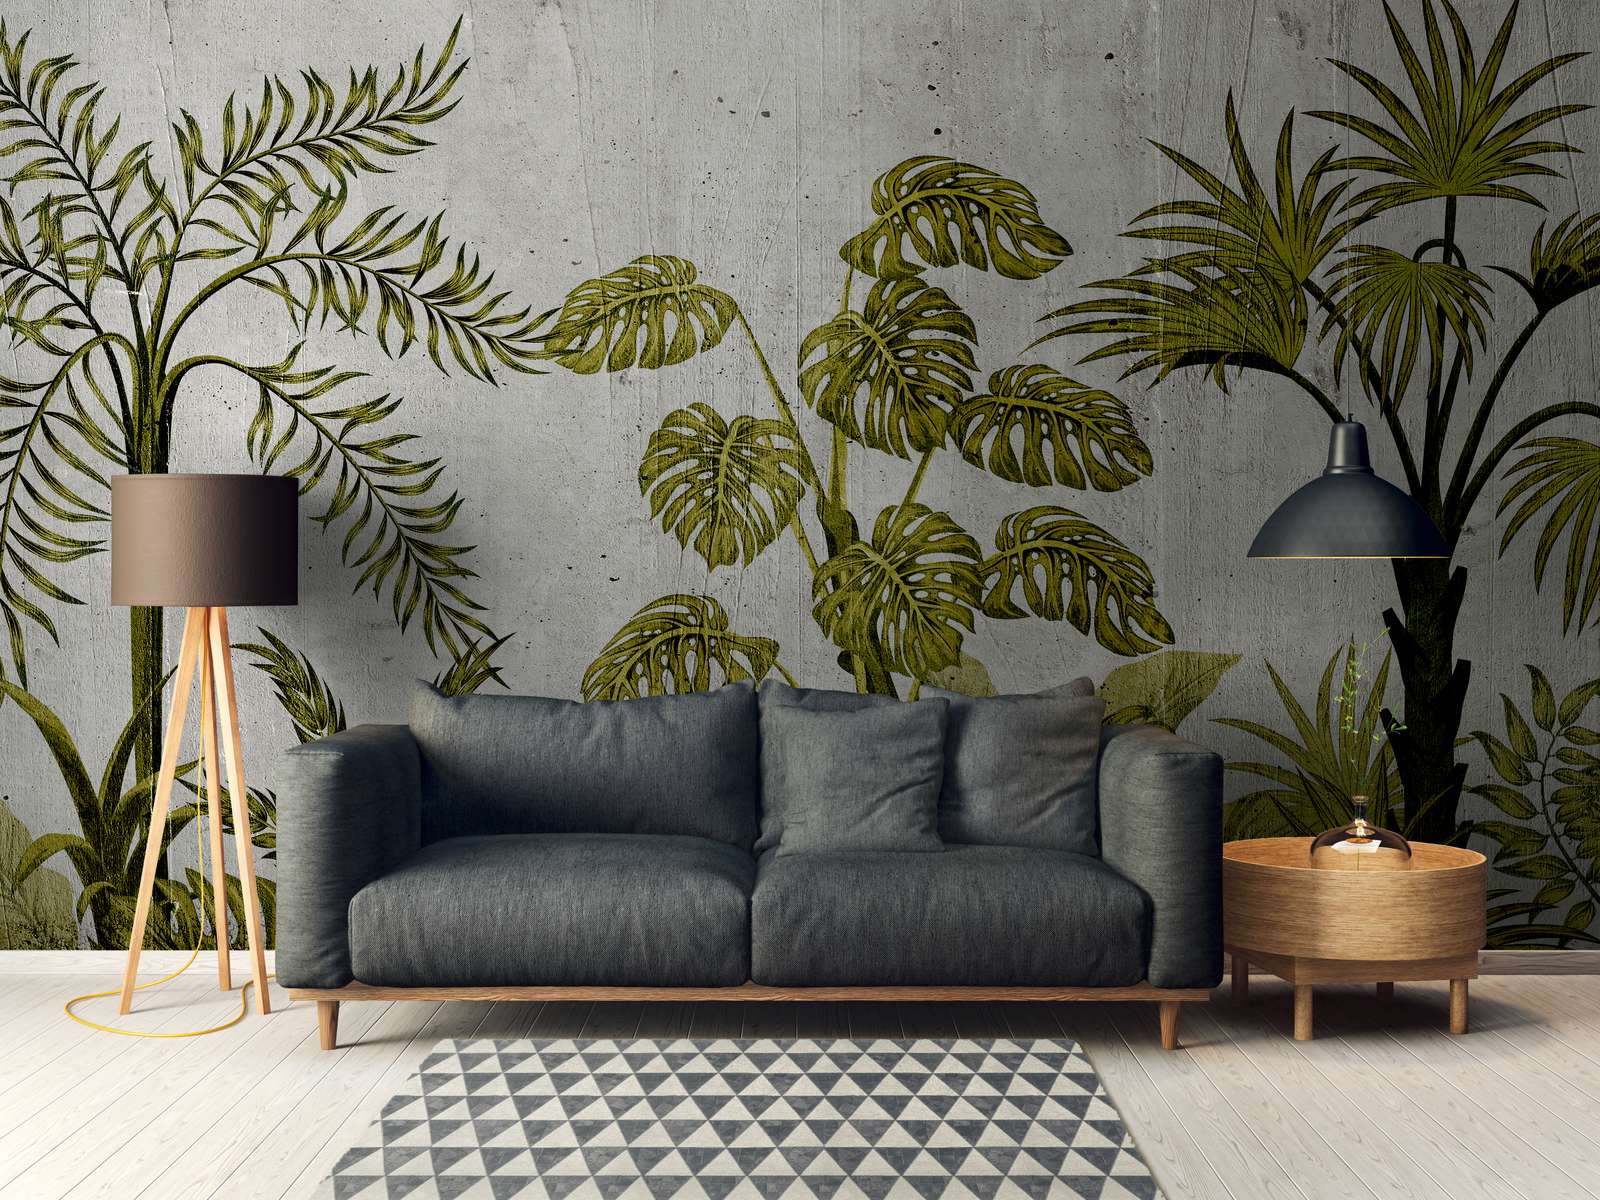             Digital behang met jungle-motief op betonnen achtergrond - groen, grijs
        